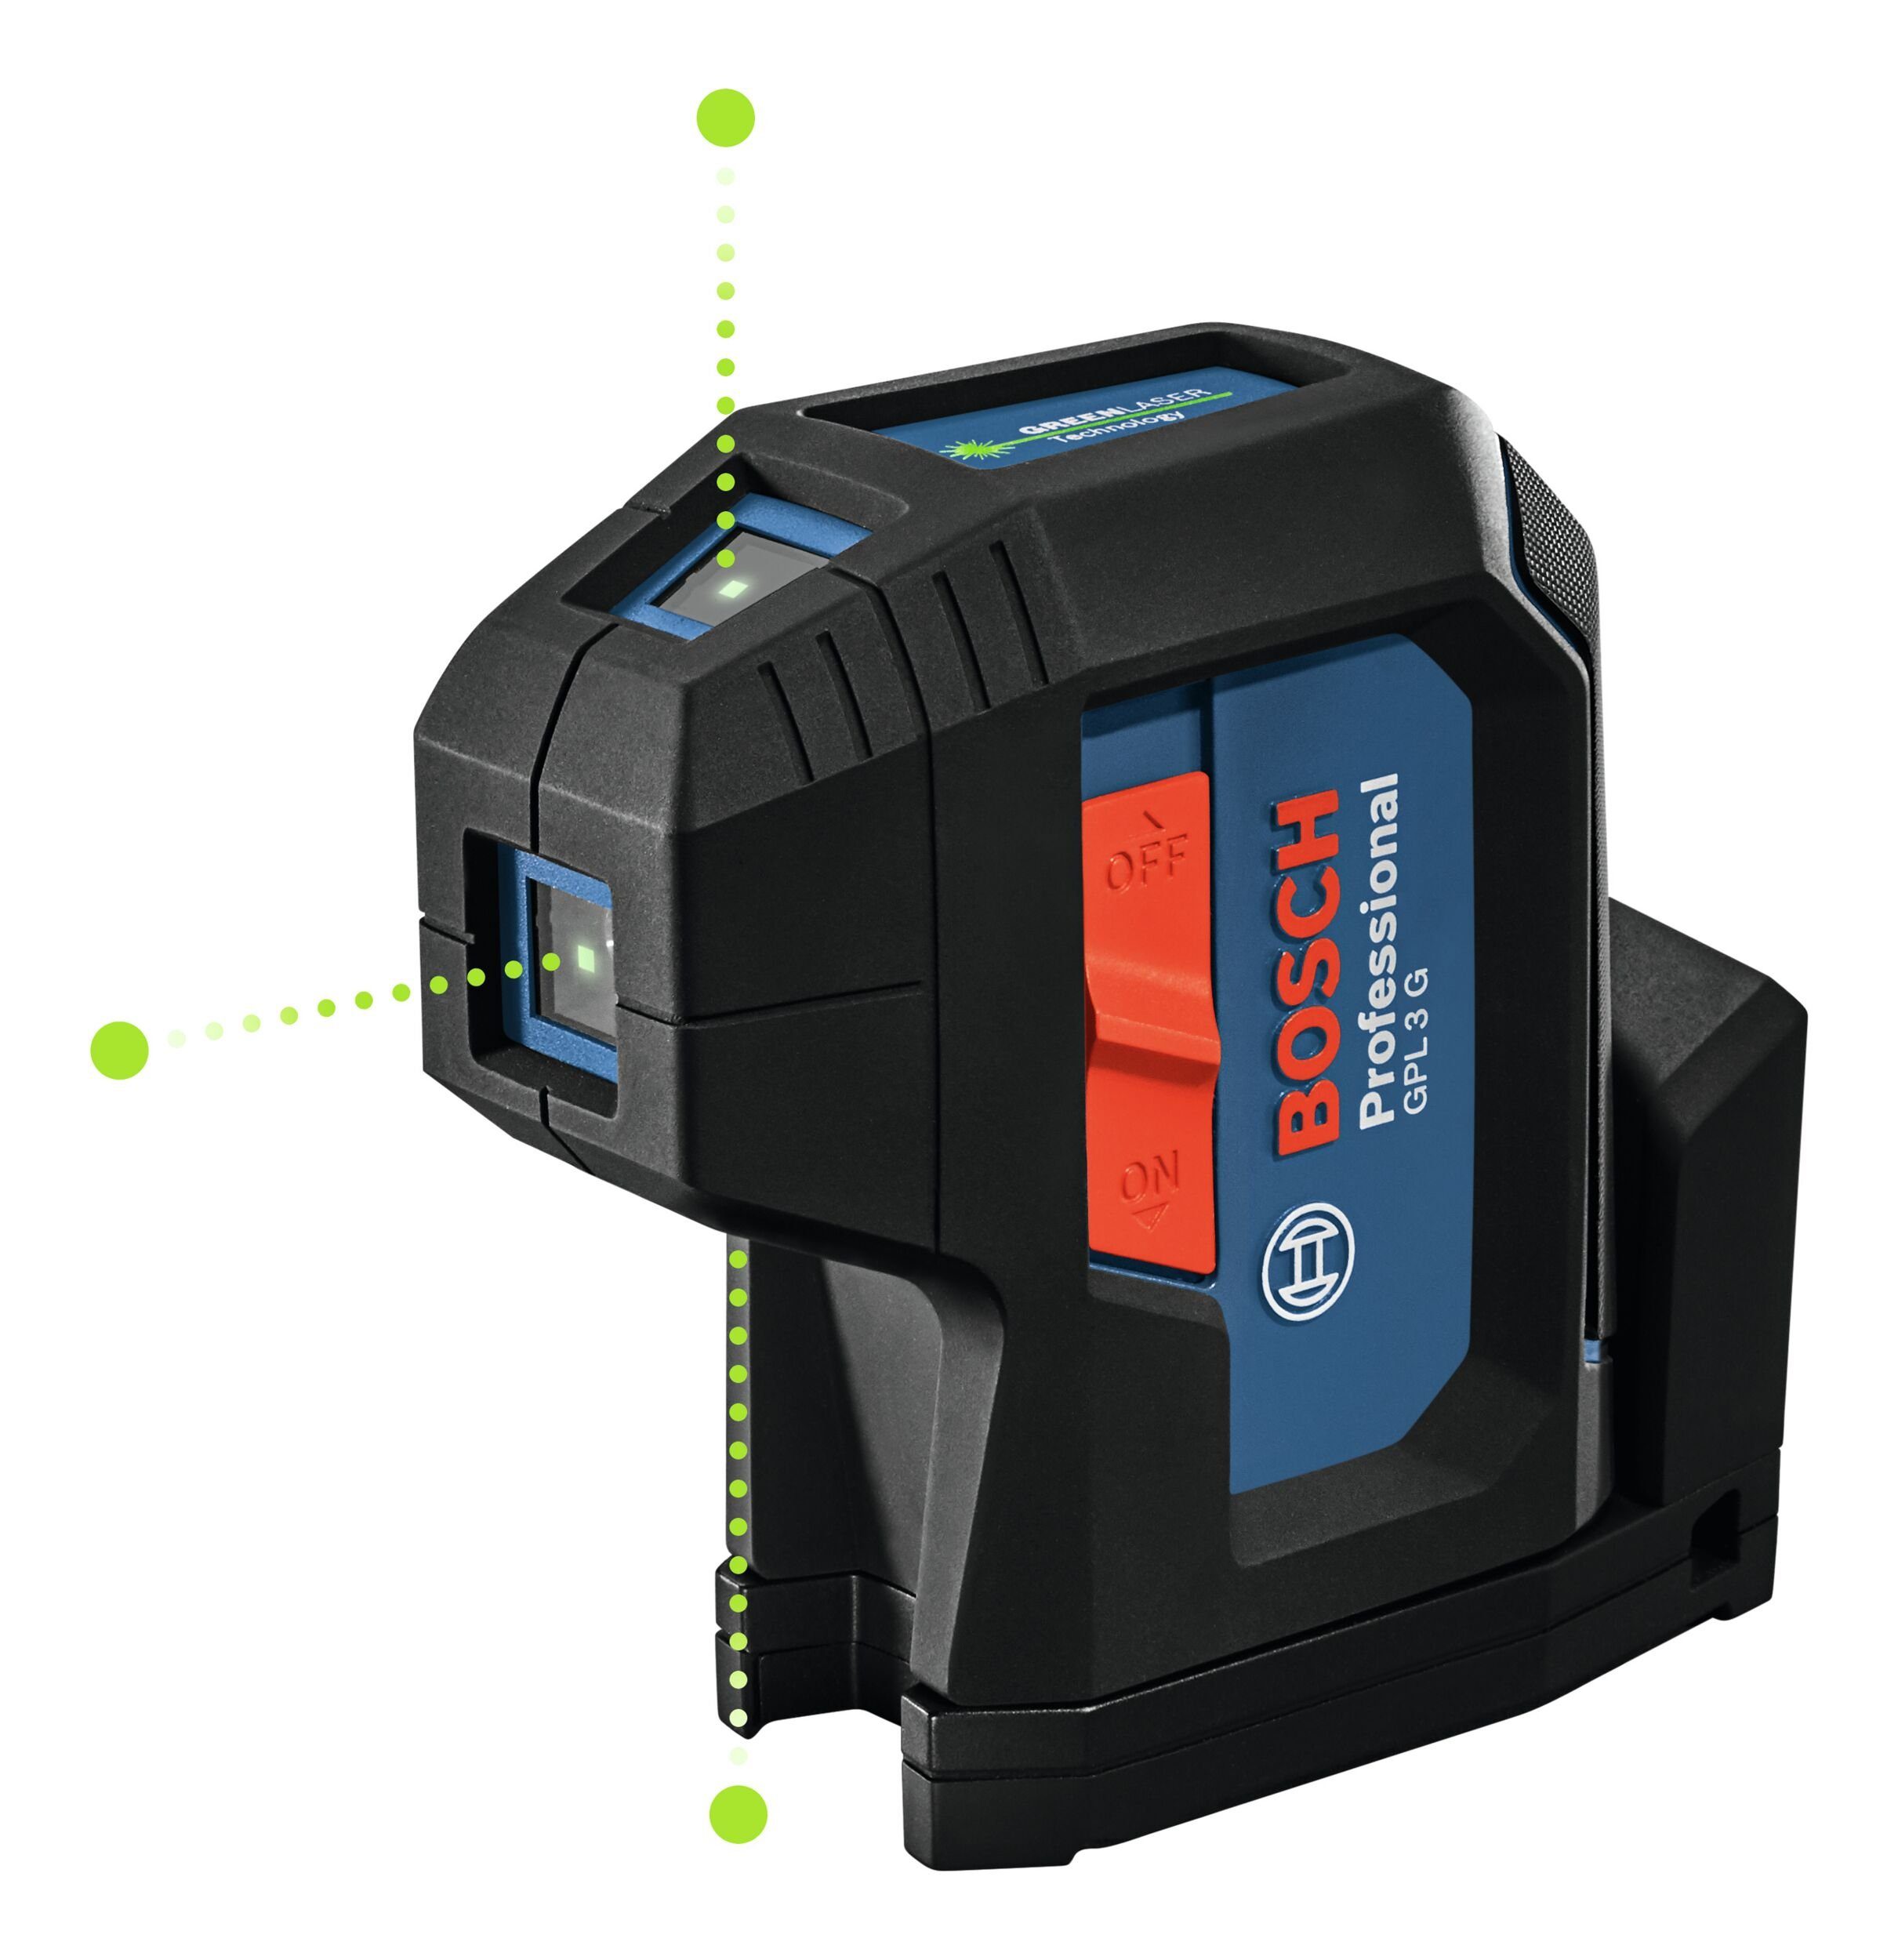 Bosch Professional Punkt- und Linienlaser GPL 3 G, Punktlaser mit Schutztasche